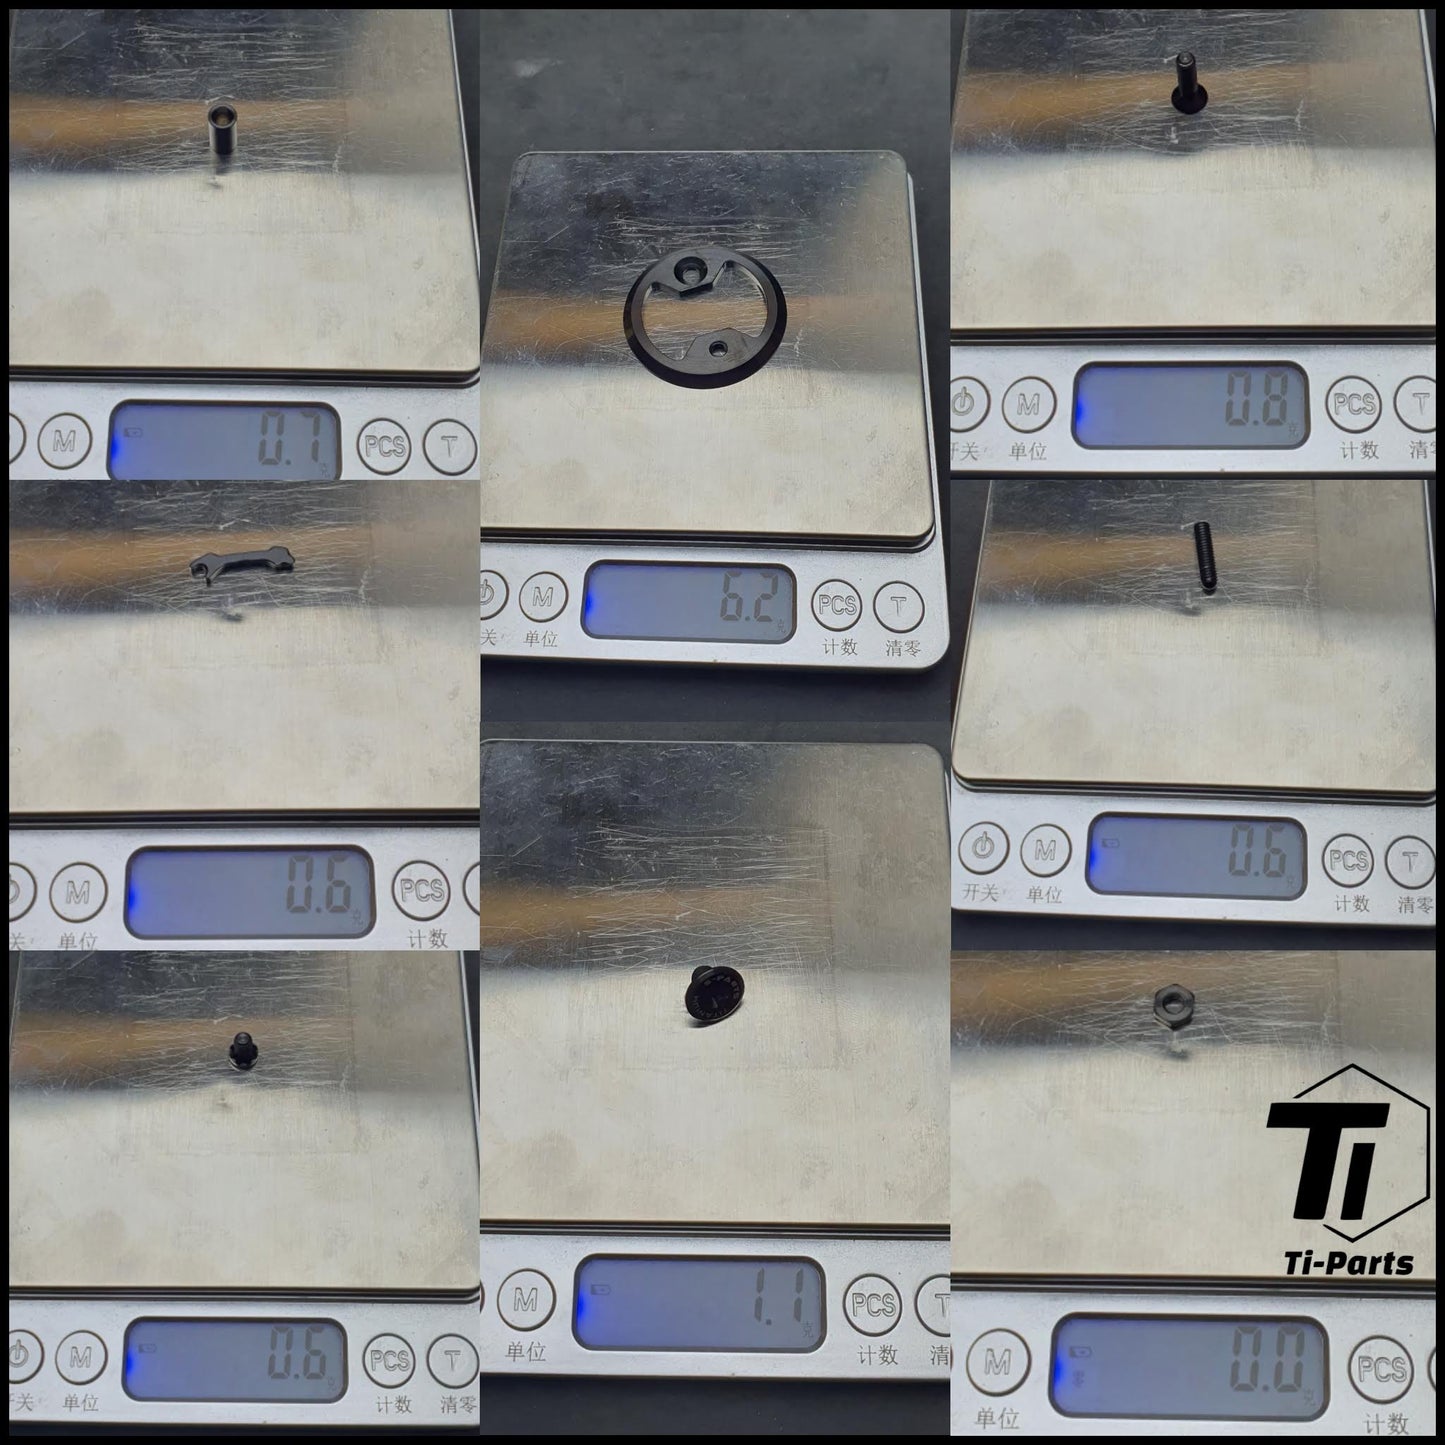 Kit de actualización de titanio Wahoo SpeedPlay | Pedal medidor de potencia cero Prwlink | Titanio Grado 5 Singapur